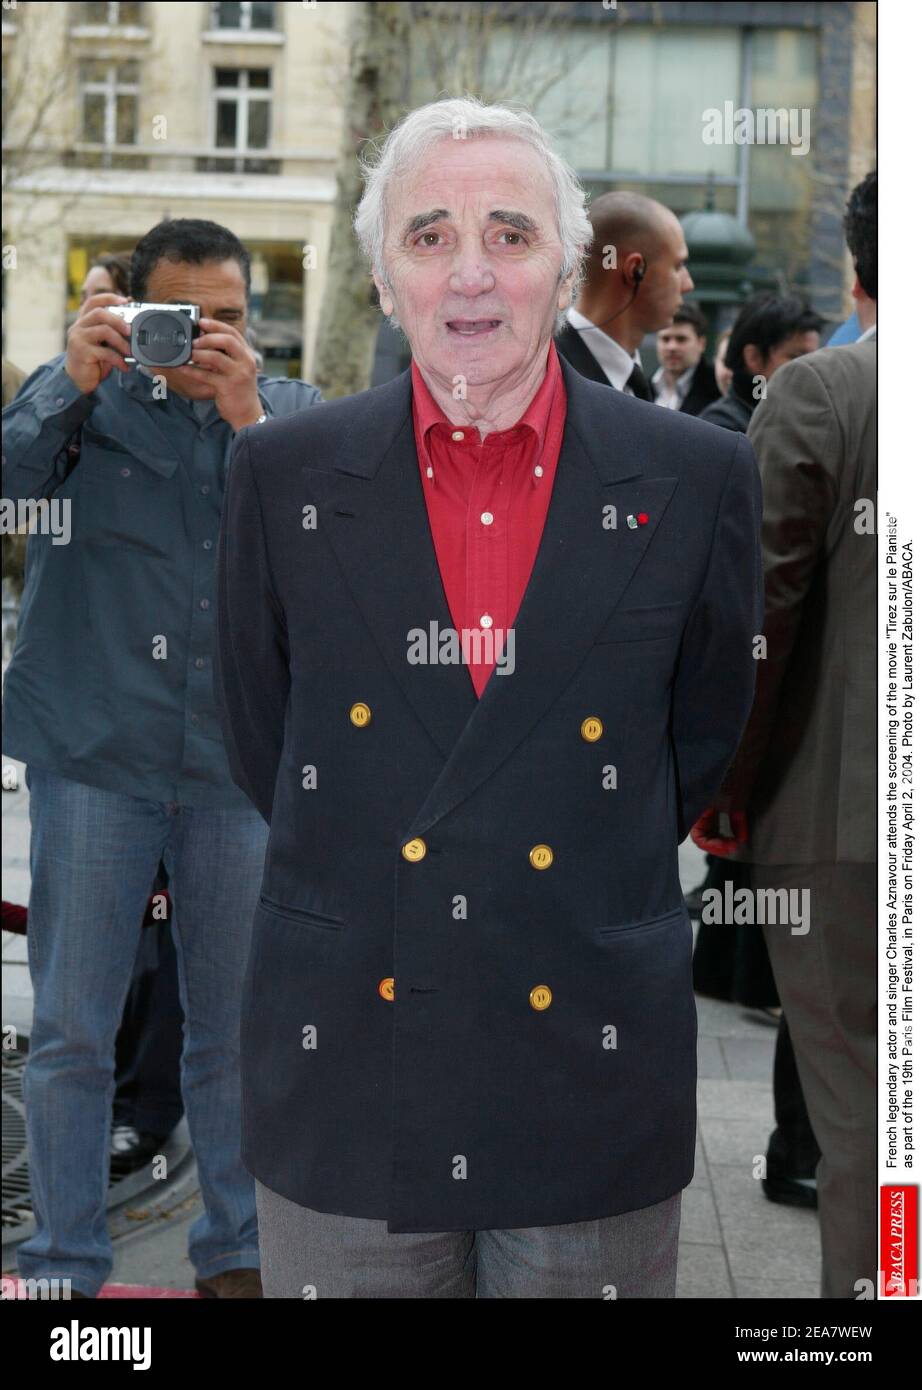 Der französische legendäre Schauspieler und Sänger Charles Aznavour nimmt am Freitag, den 2. April 2004, an der Vorführung des Films Tirez sur le Pianiste im Rahmen des Pariser Filmfestivals 19th in Paris Teil. Foto von Laurent Zabulon/ABACA. Stockfoto